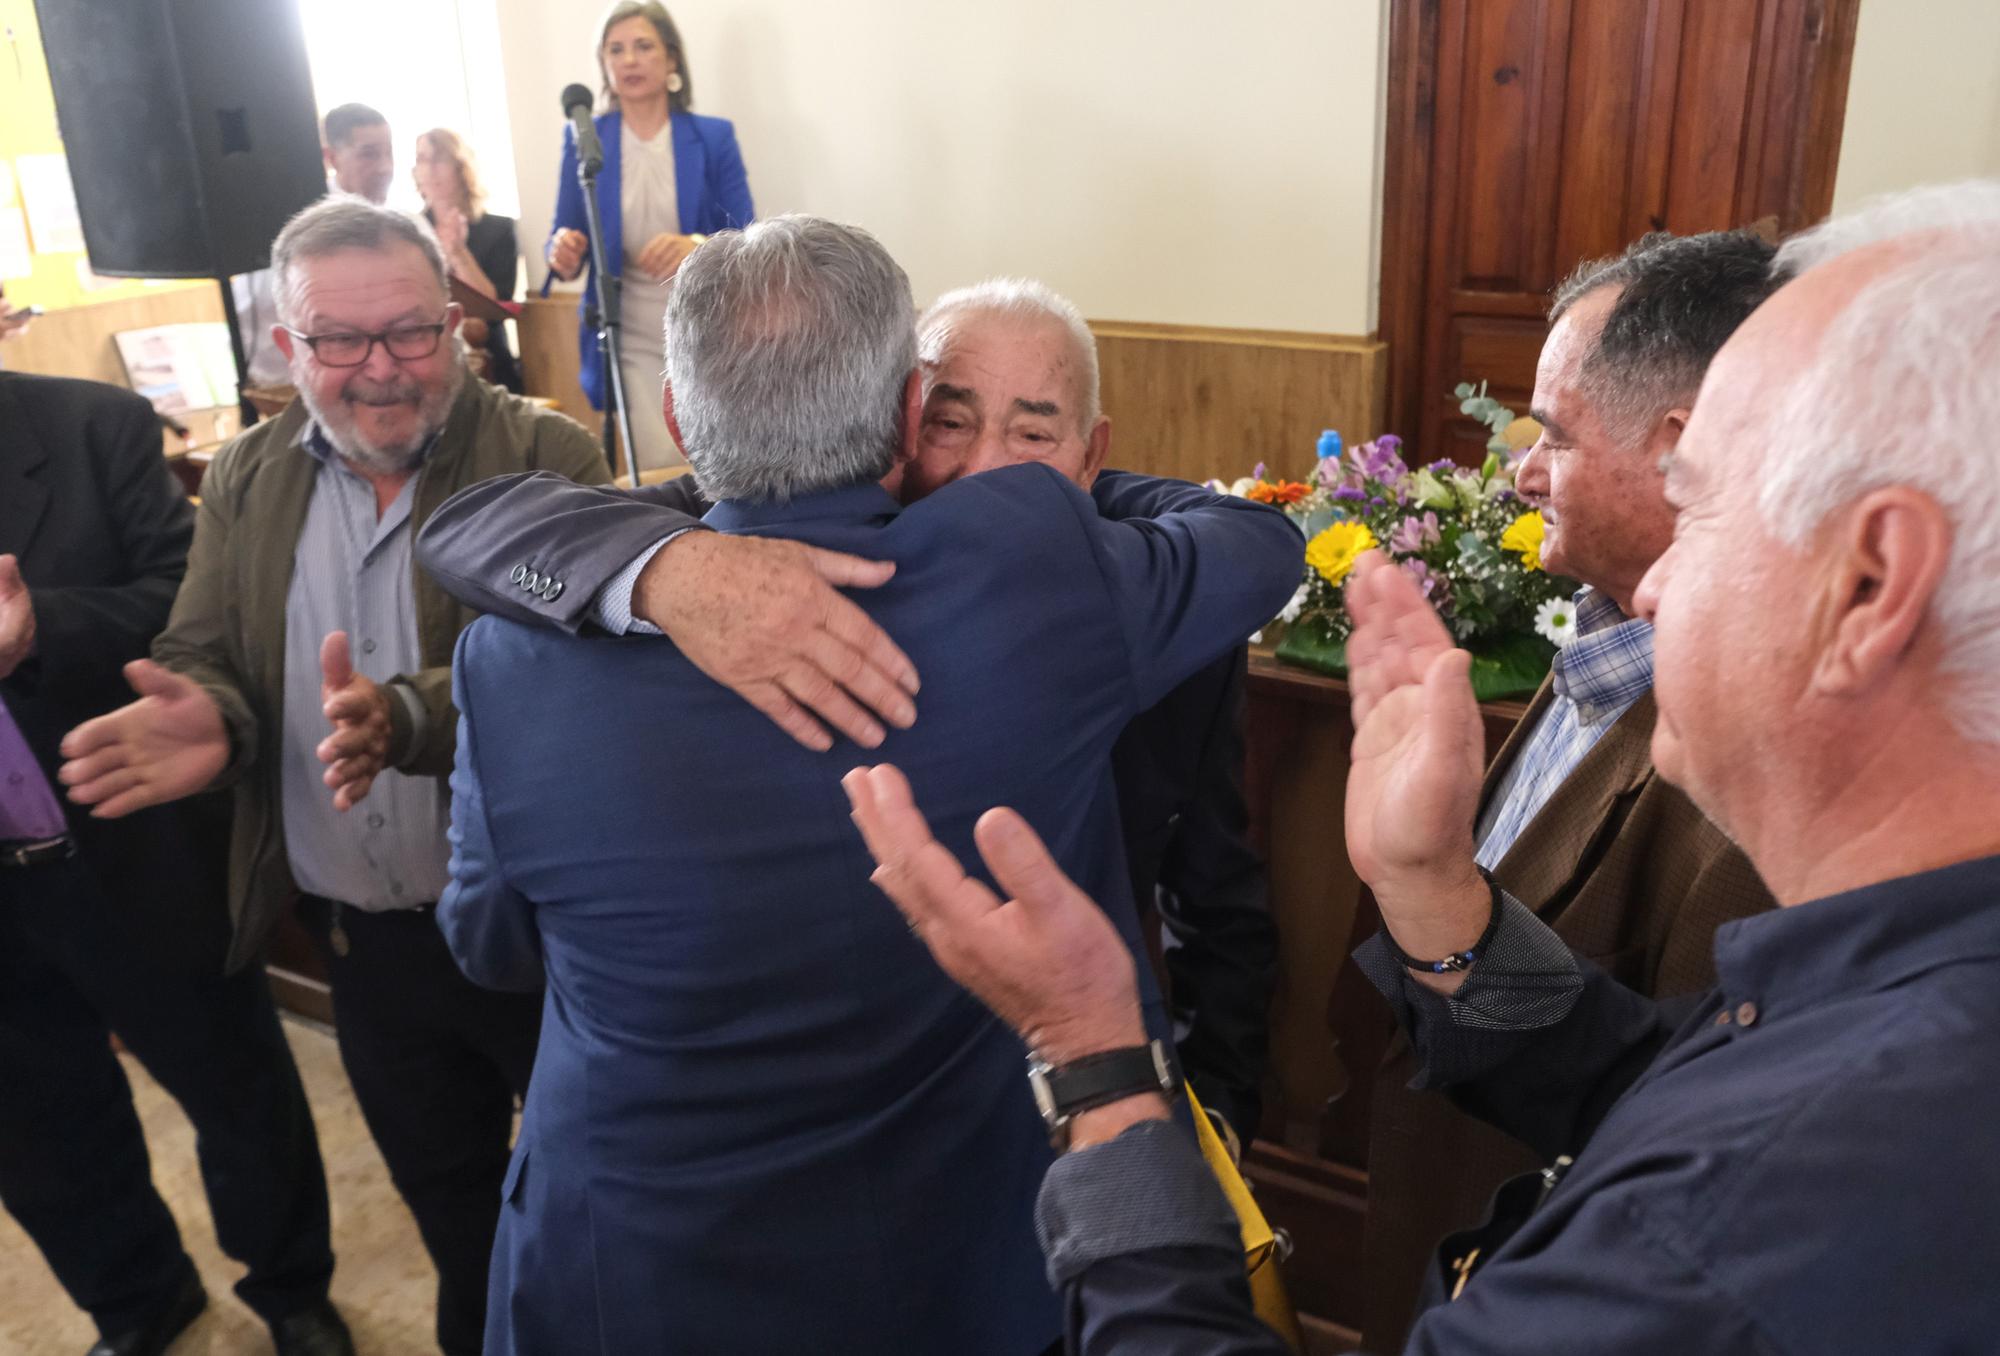 El alcalde de Elche anuncia la concesión de la medalla de plata del Bimil.lenari a Riegos El Porvenir